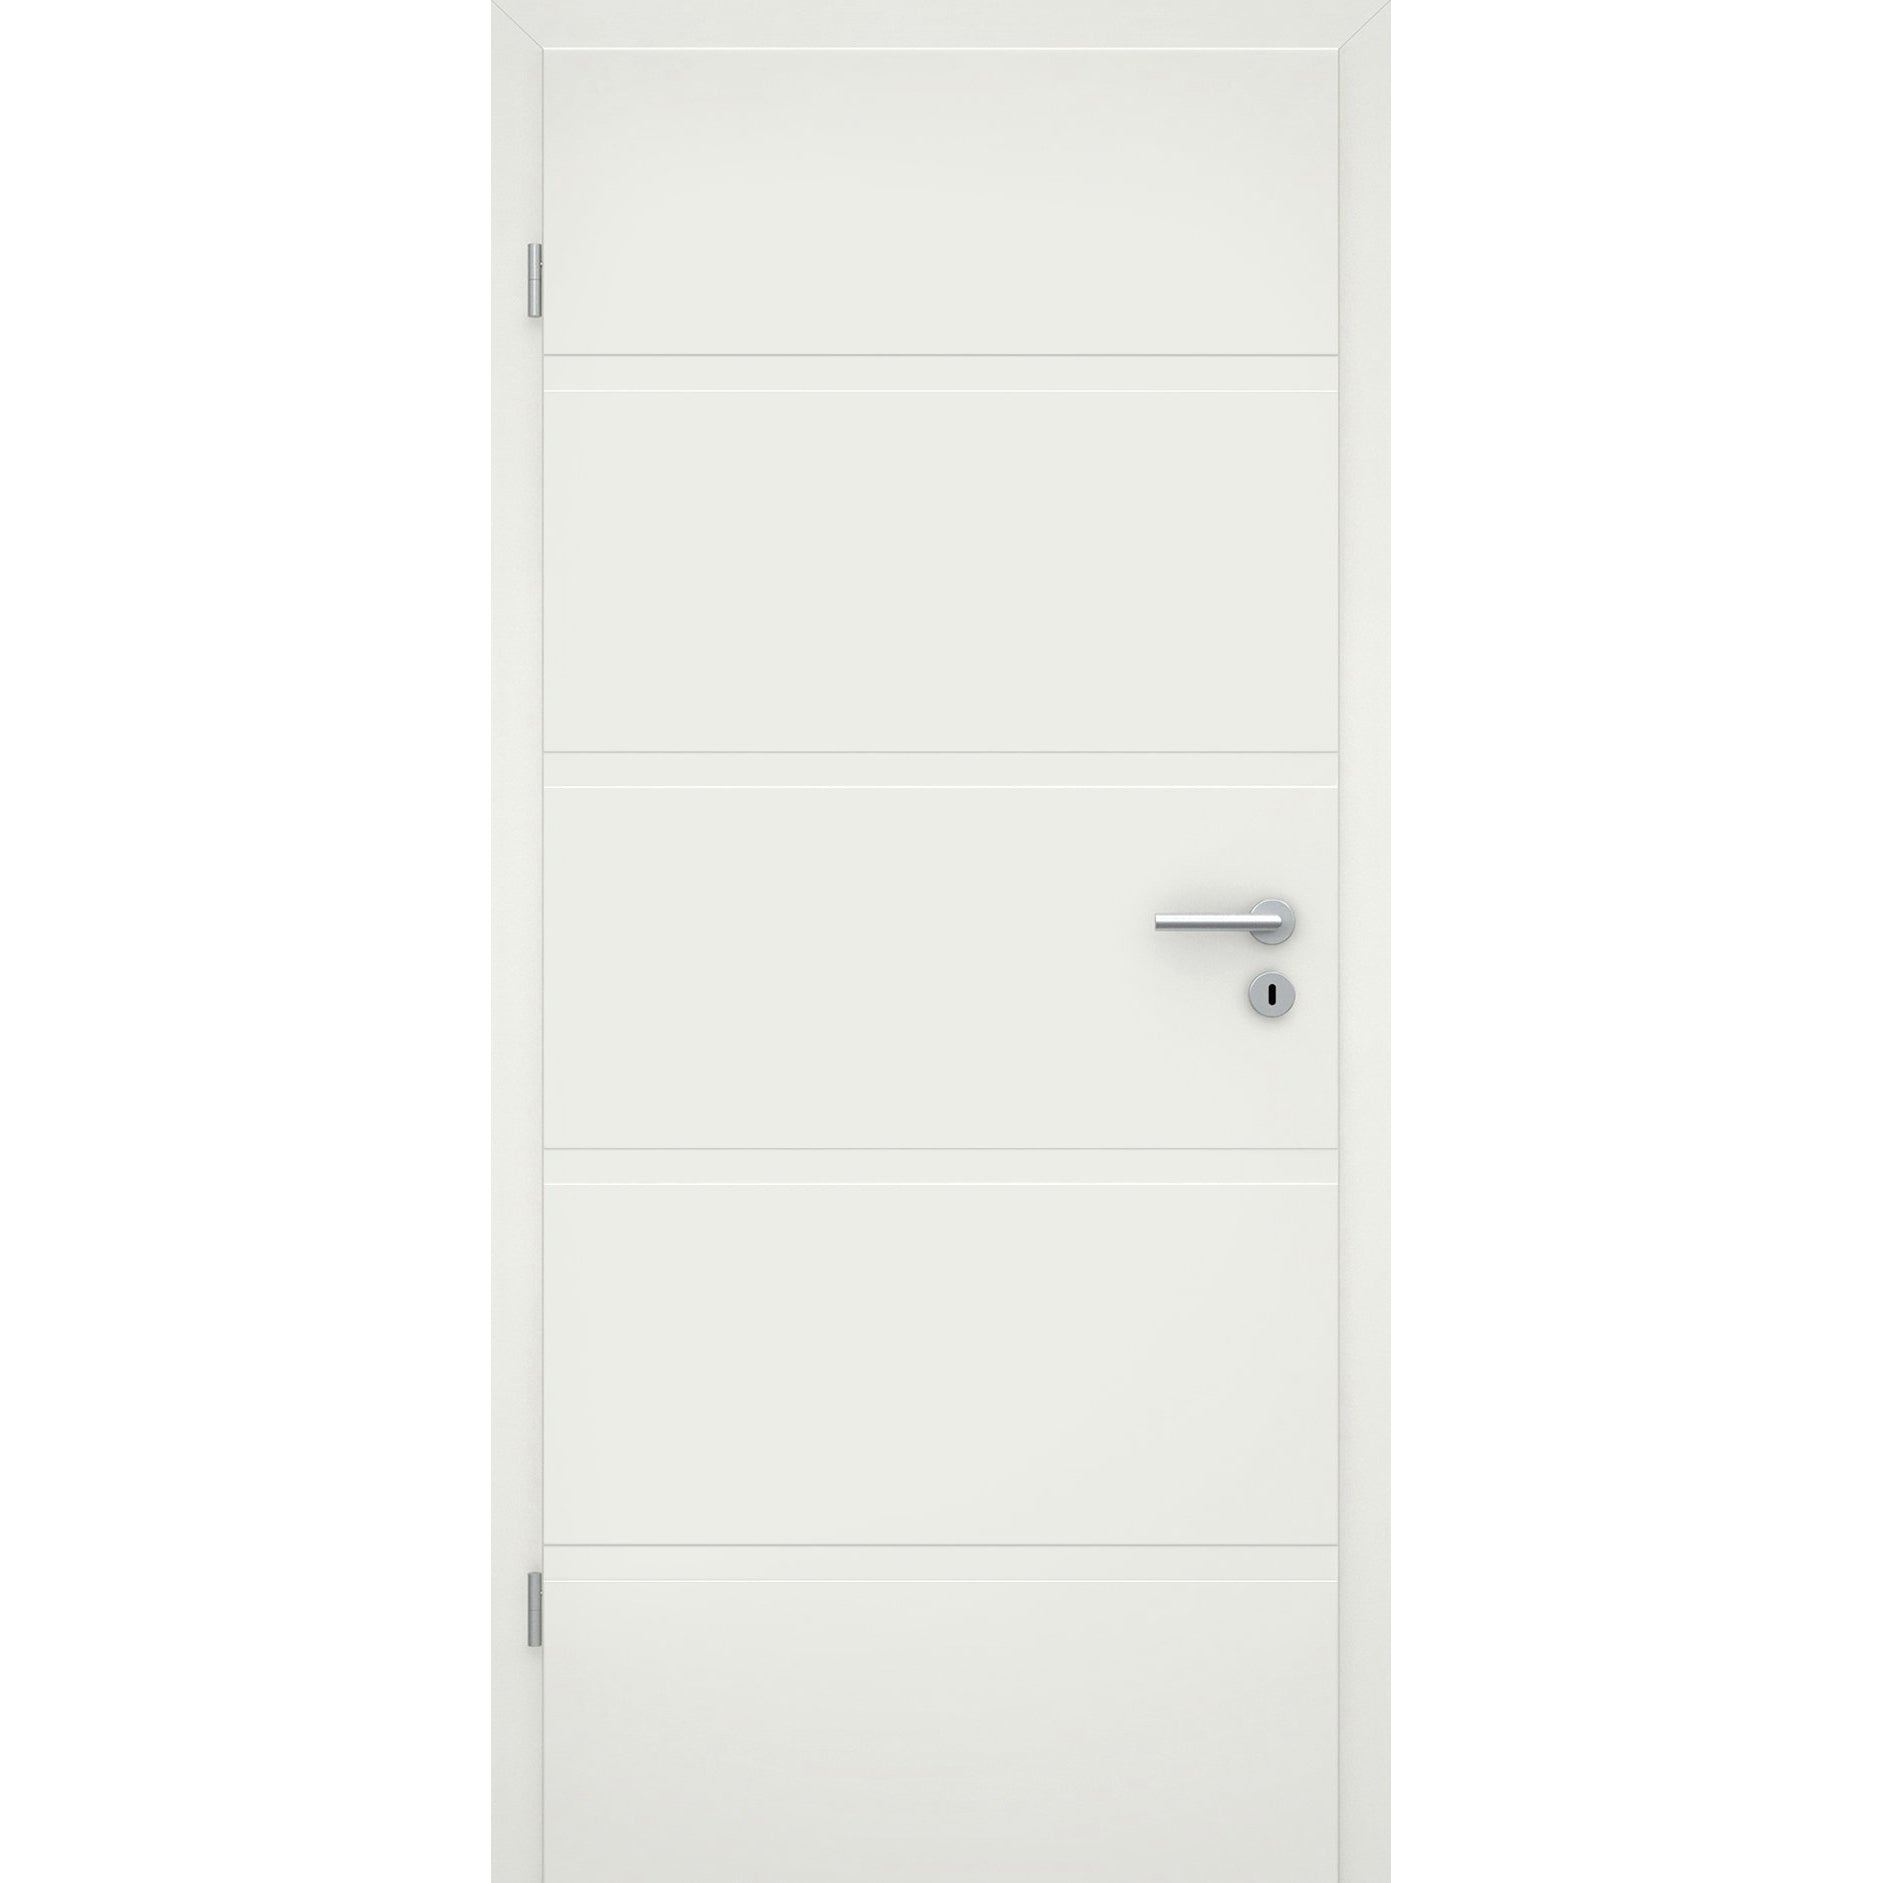 Zimmertür soft-weiß 4 breite Rillen Eckkante - Modell Designtür QB41